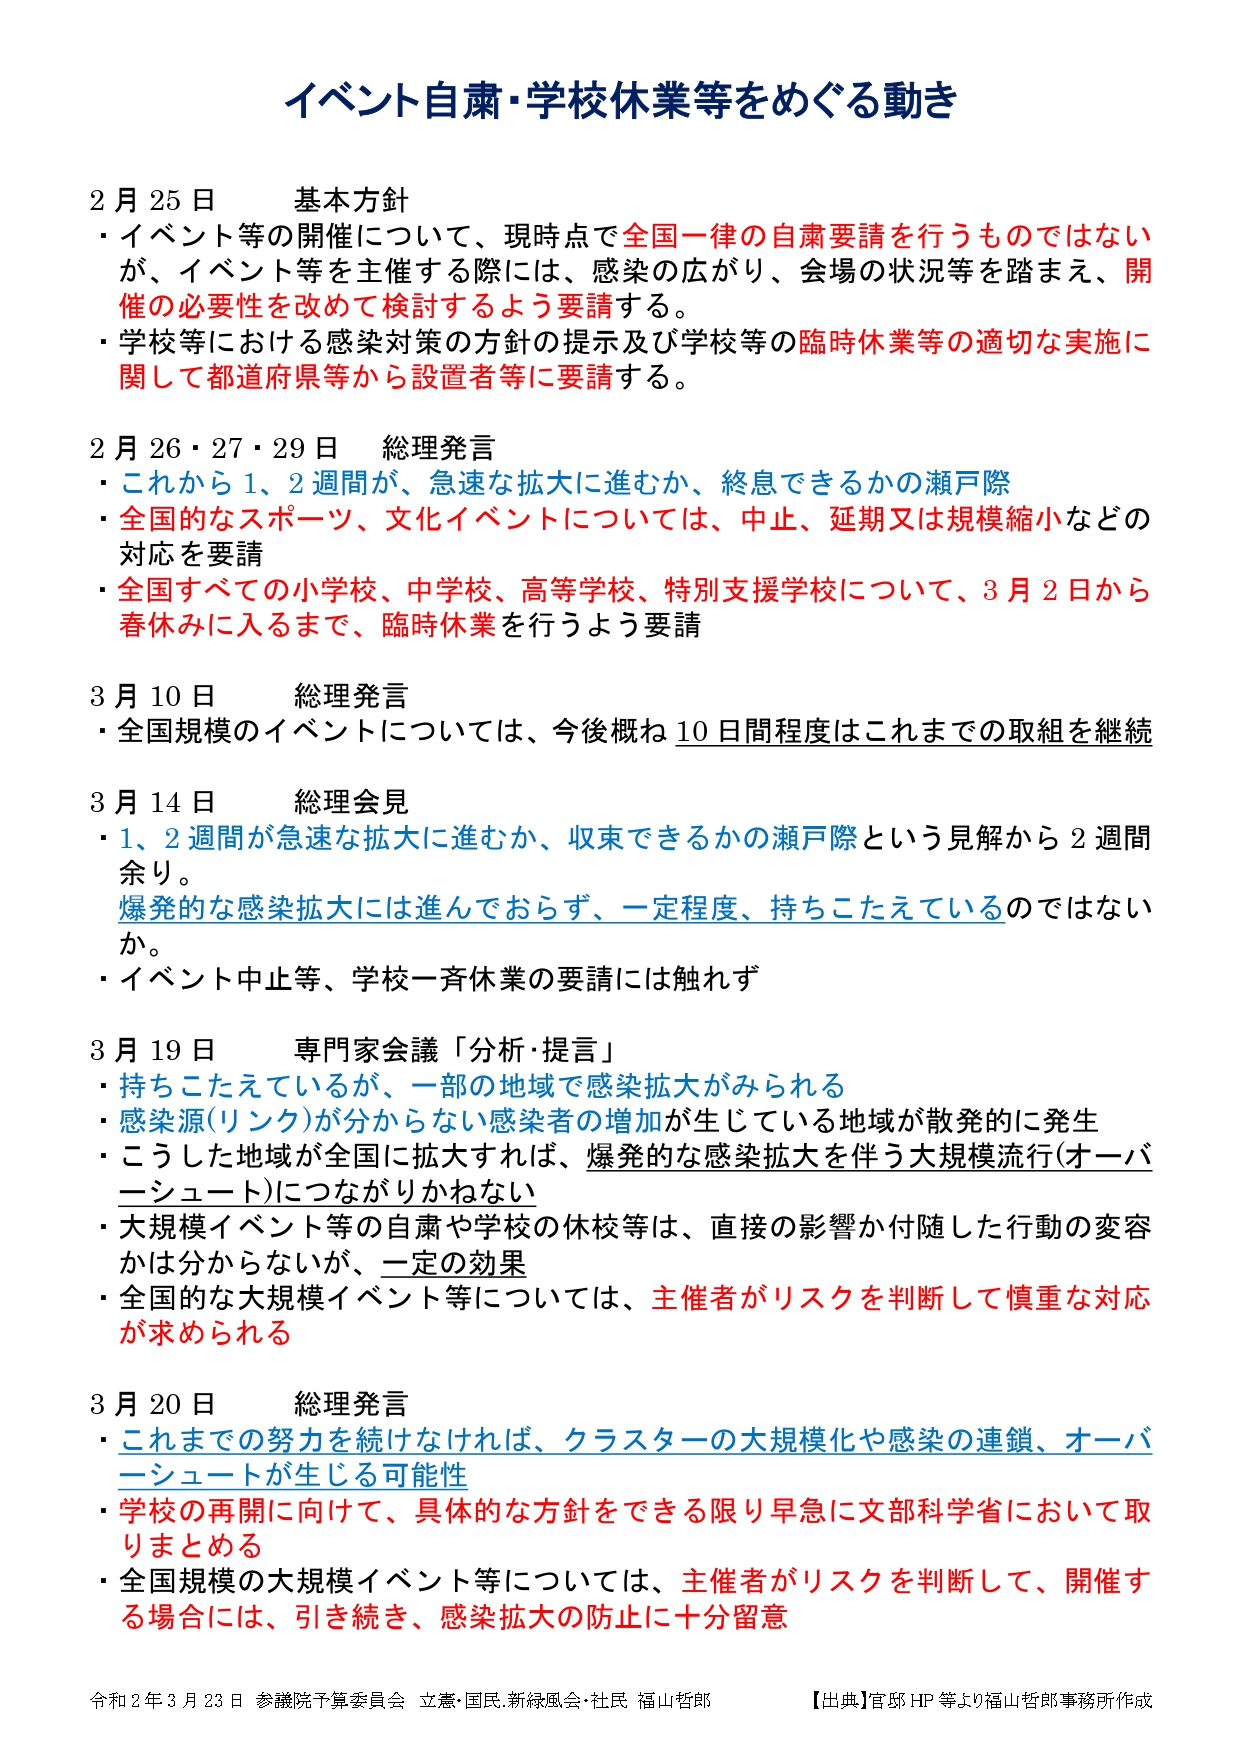 2020年3月23日【参院予算委】福山哲郎議員資料_pages-to-jpg-0001.jpg